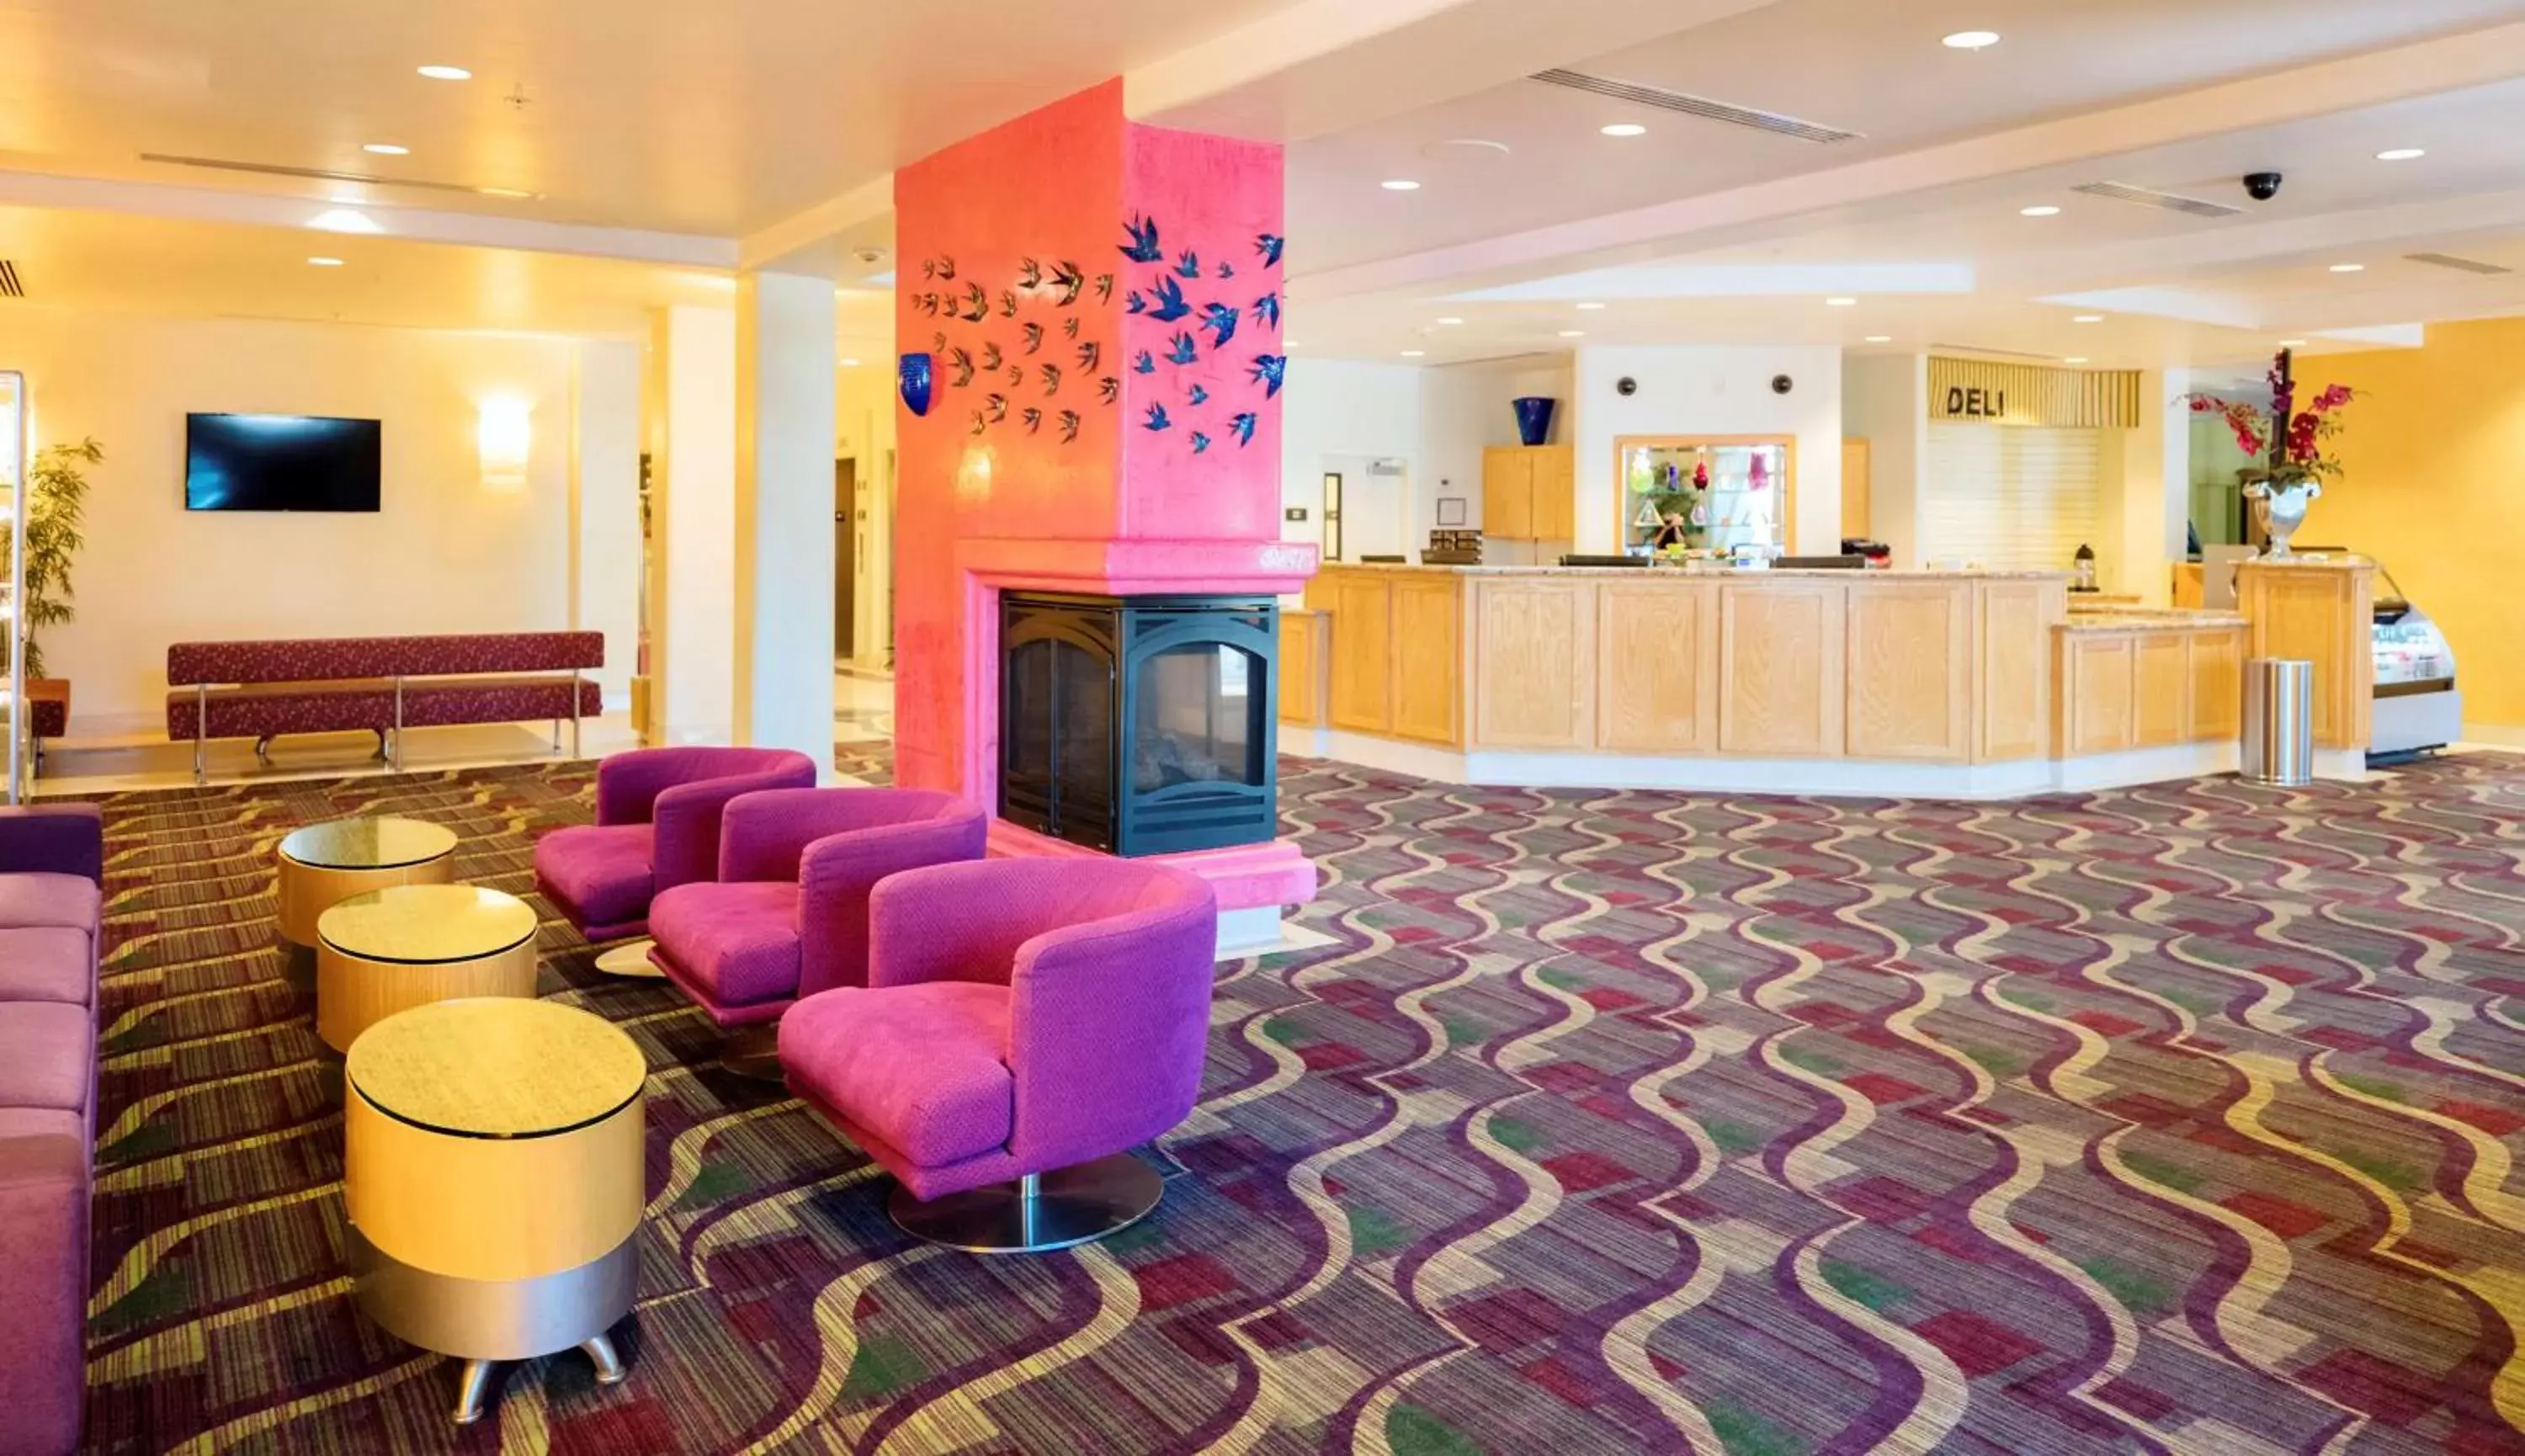 Lobby or reception in Radisson Hotel Yuma